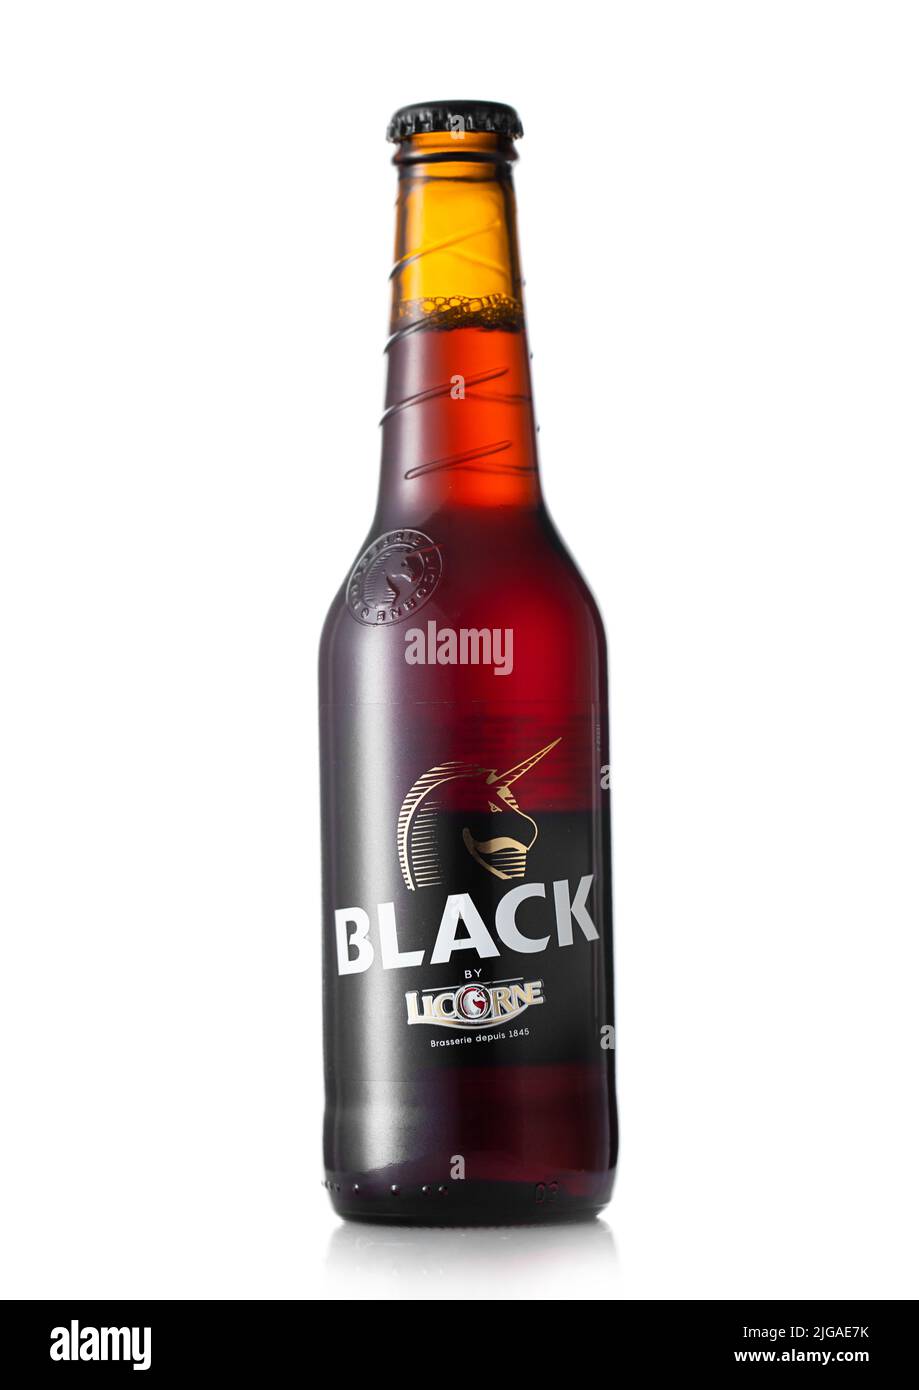 LONDON, UK - JULY 03, 2022: Bottle of Black Licorne dark beer on white. Stock Photo